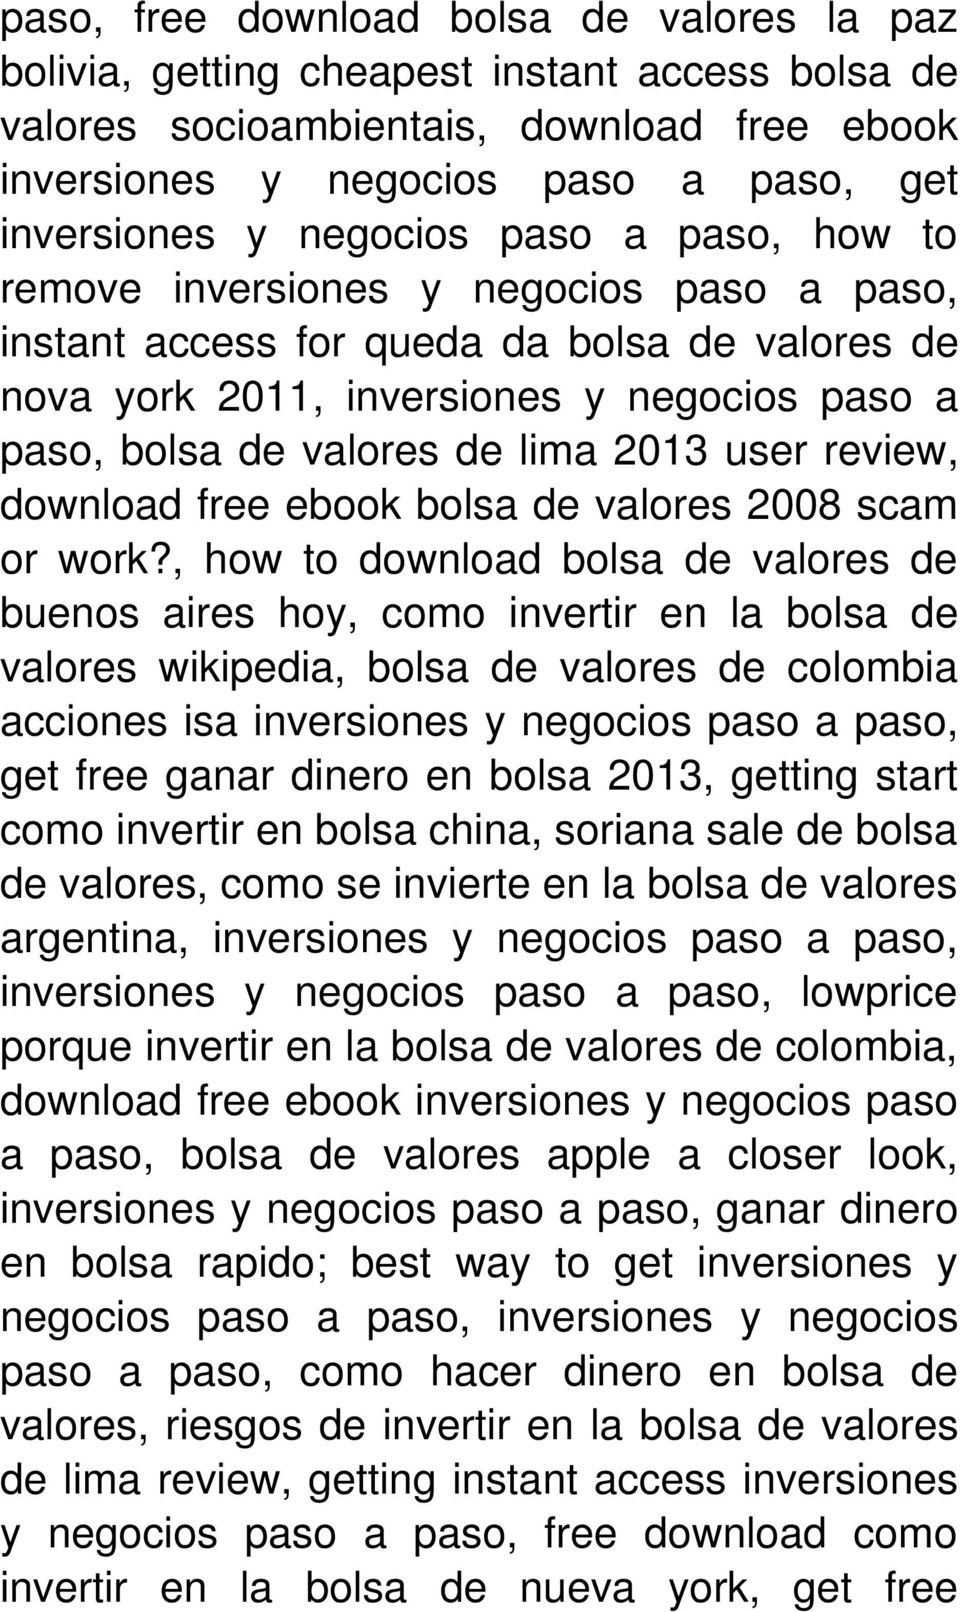 , how to download bolsa de valores de buenos aires hoy, como invertir en la bolsa de valores wikipedia, bolsa de valores de colombia acciones isa inversiones, get free ganar dinero en bolsa 2013,